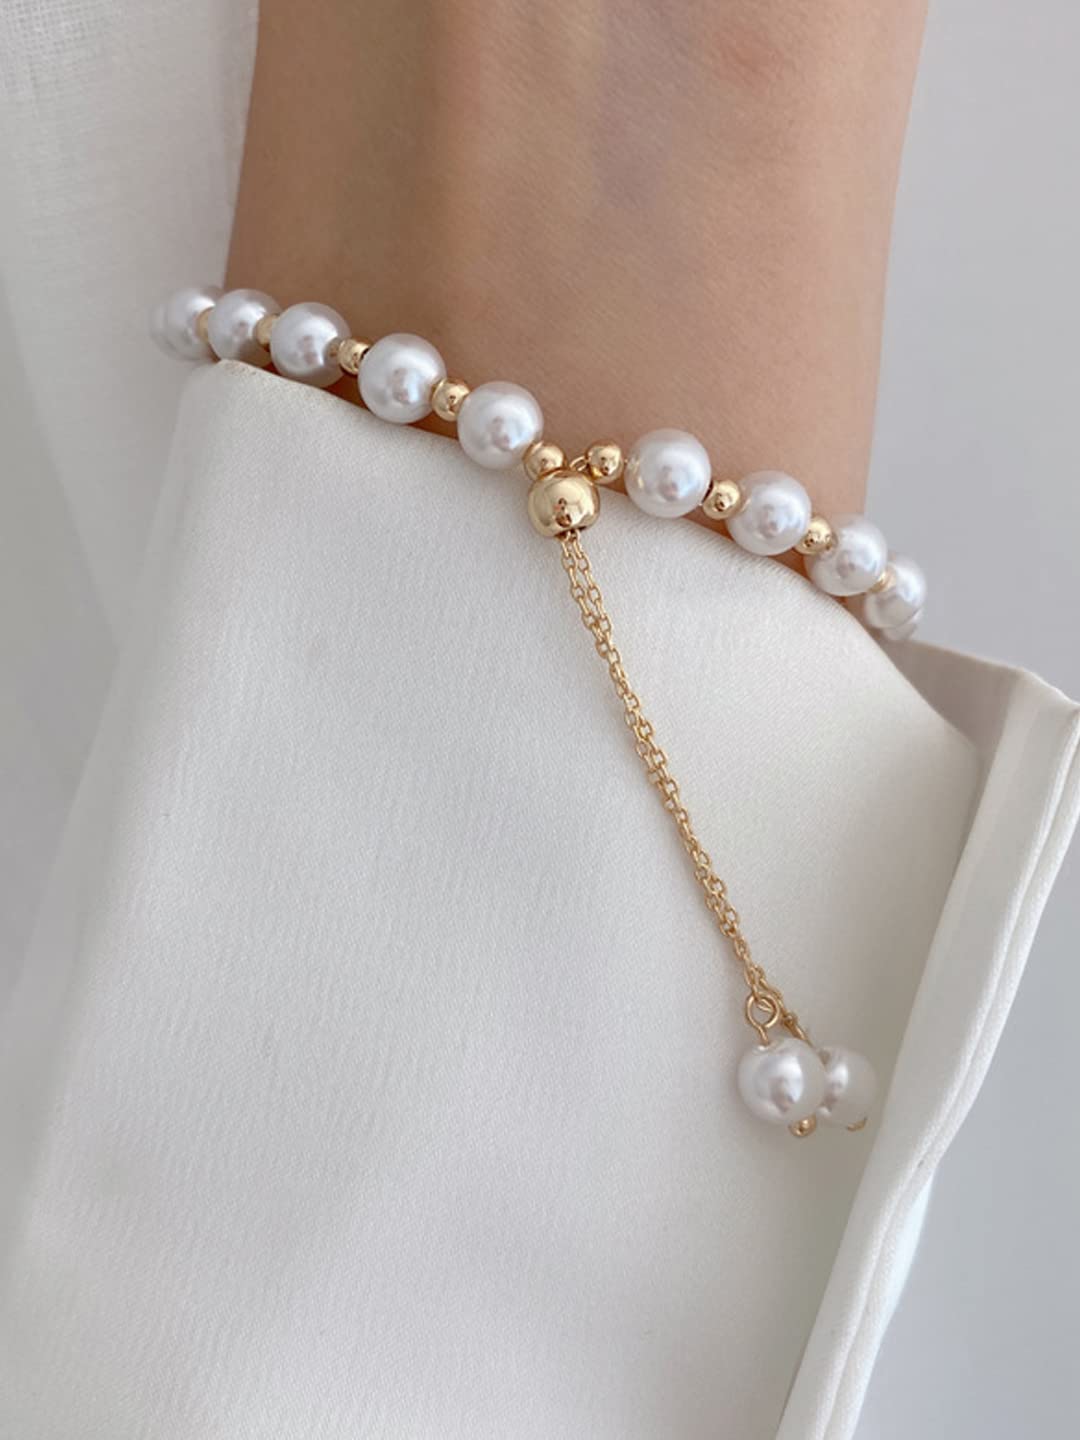 Buy Cute Bow Adjustable Pearl Bracelet Online | CaratLane